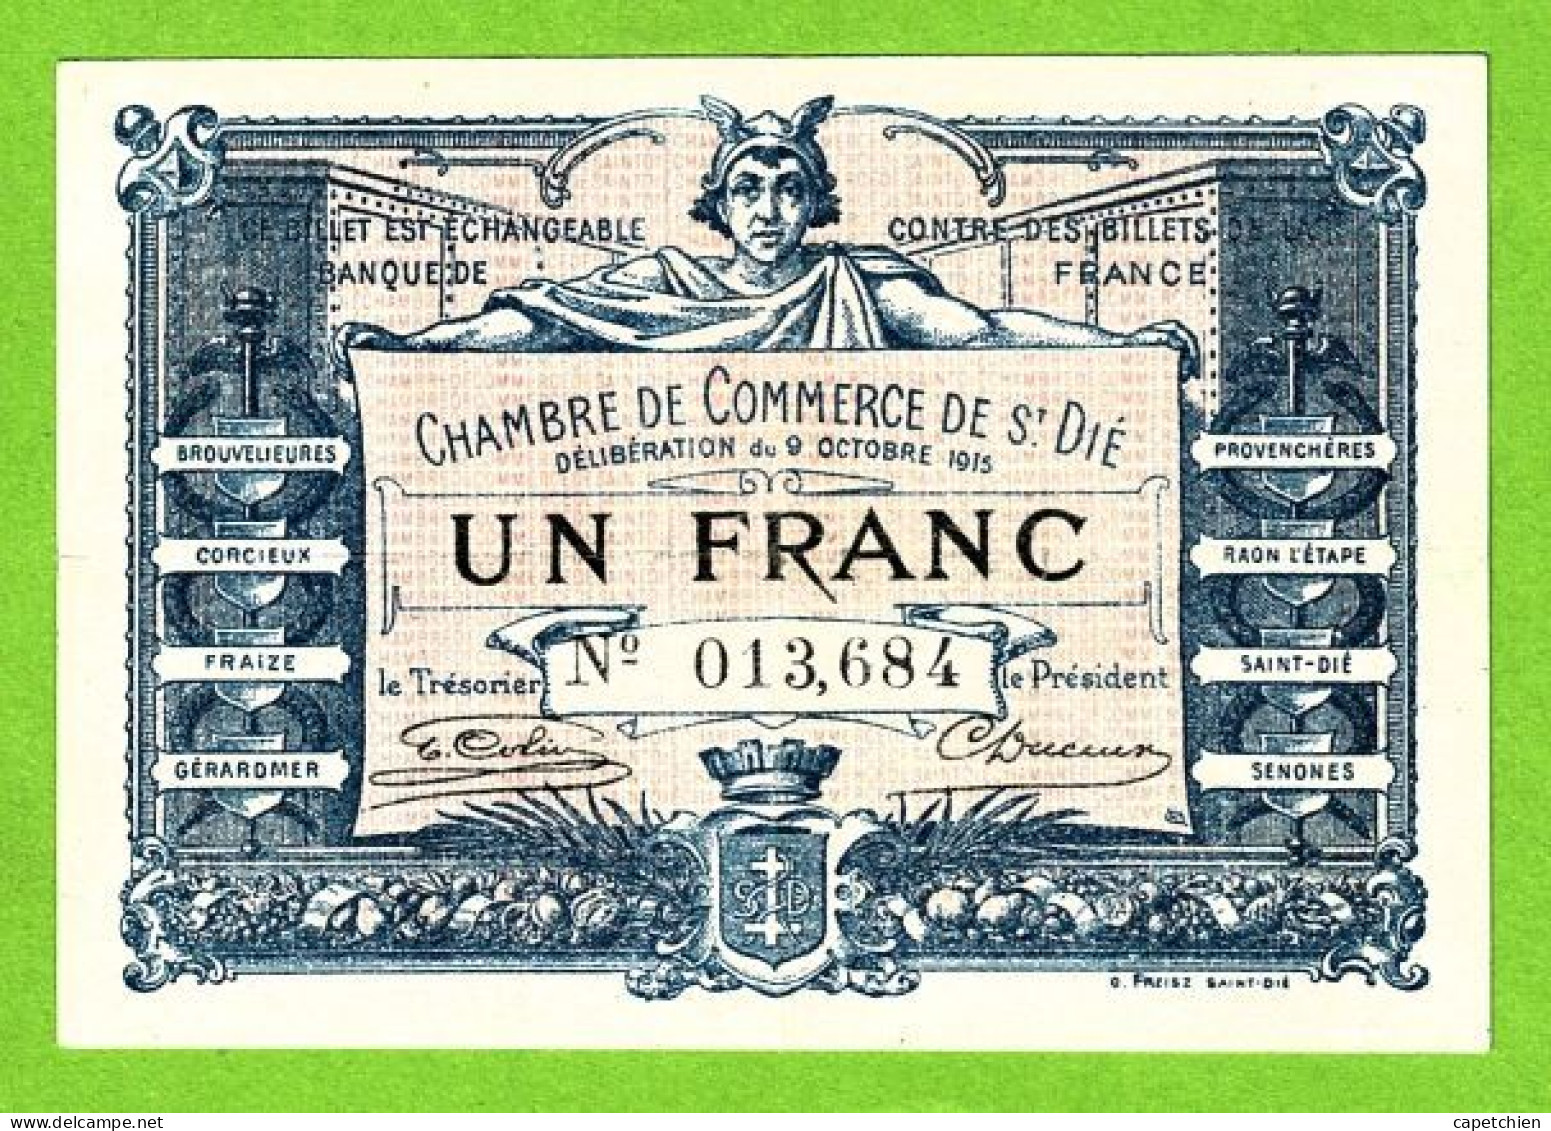 FRANCE / CHAMBRE DE COMMERCE De SAINT DIE / 1 FRANC / 9 OCTOBRE 1915 / 013,684 - Chamber Of Commerce